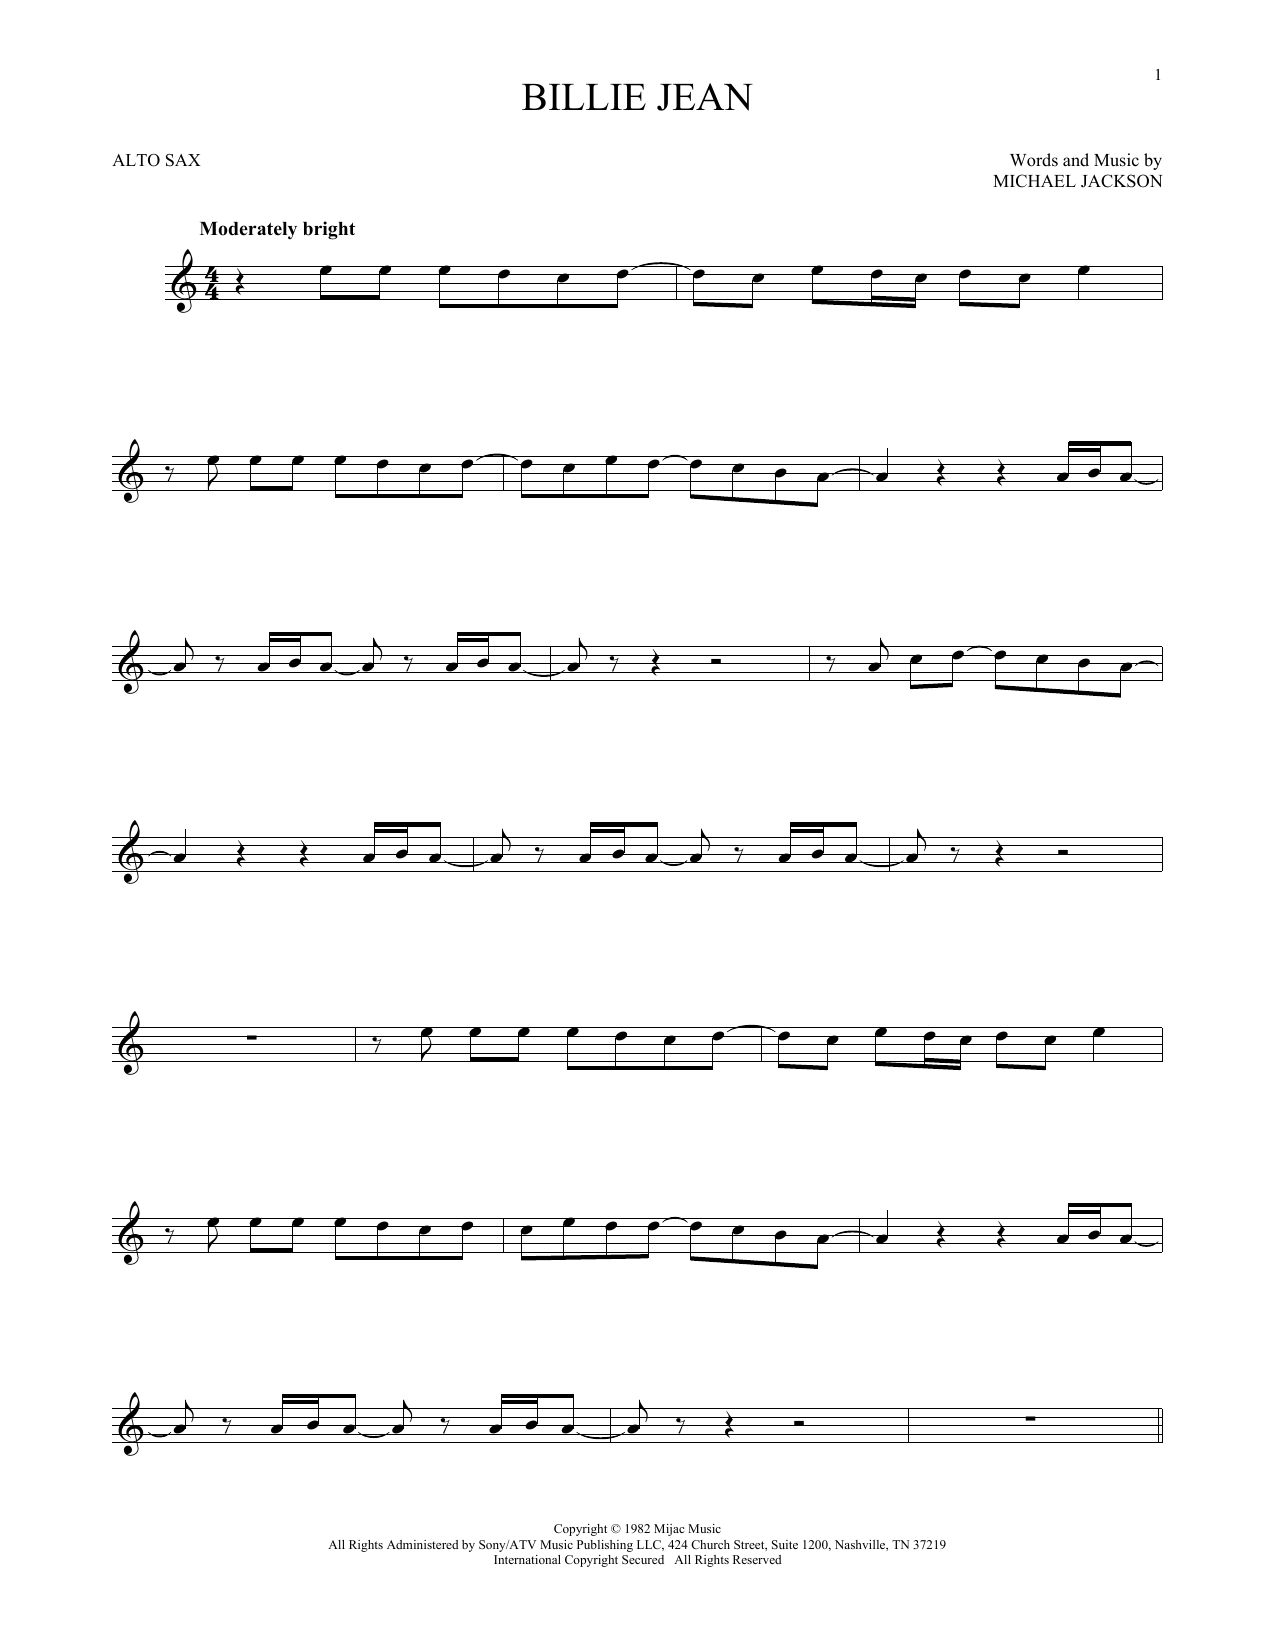 Partition Saxophone Billie Jean De Michael Jackson - Sax Alto tout Partition Saxophone Alto